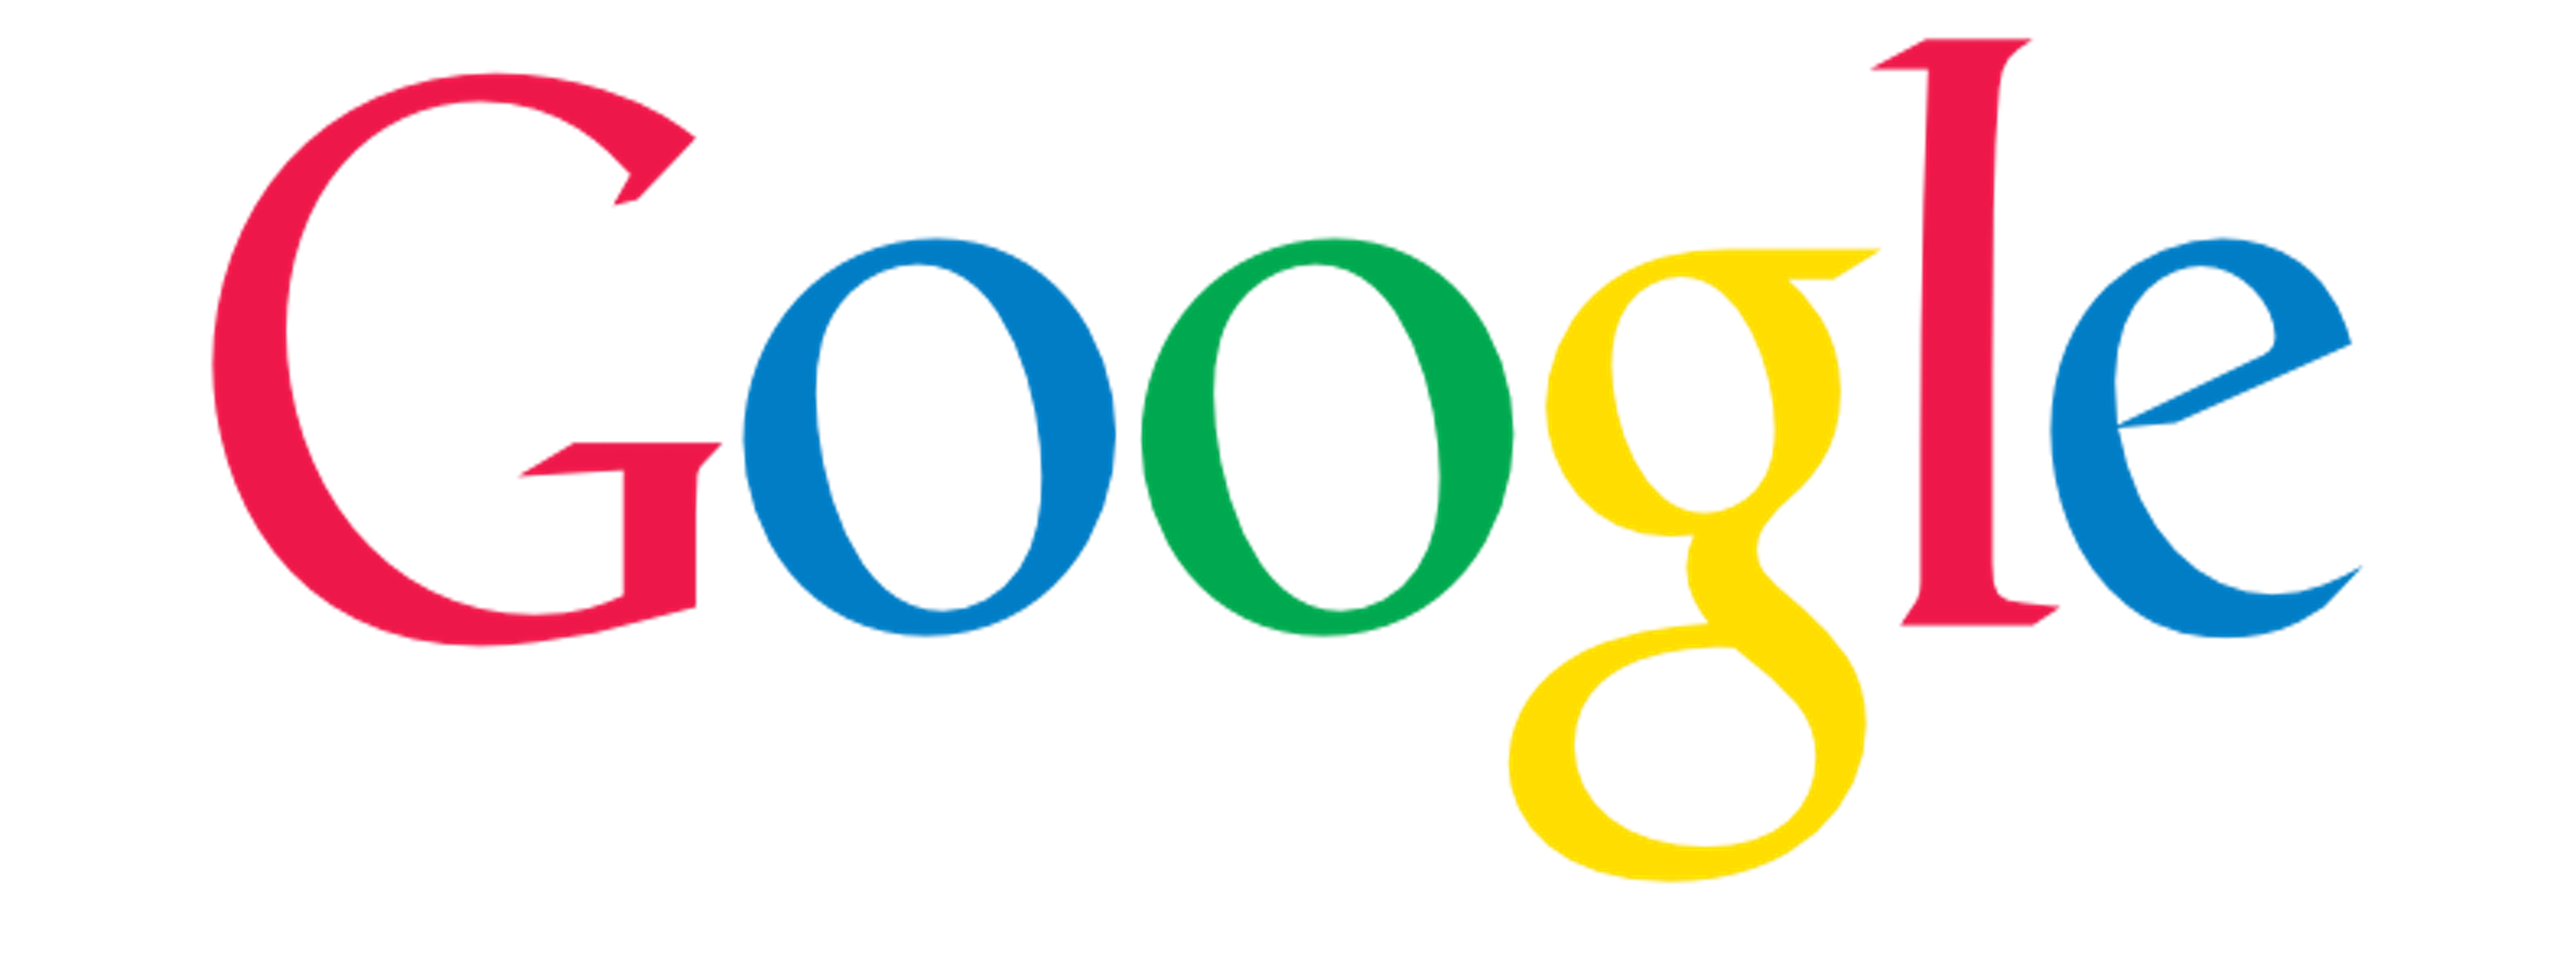 Логотип гугл. Google логотип PNG. Google анимация логотипа. Гугл без фона.